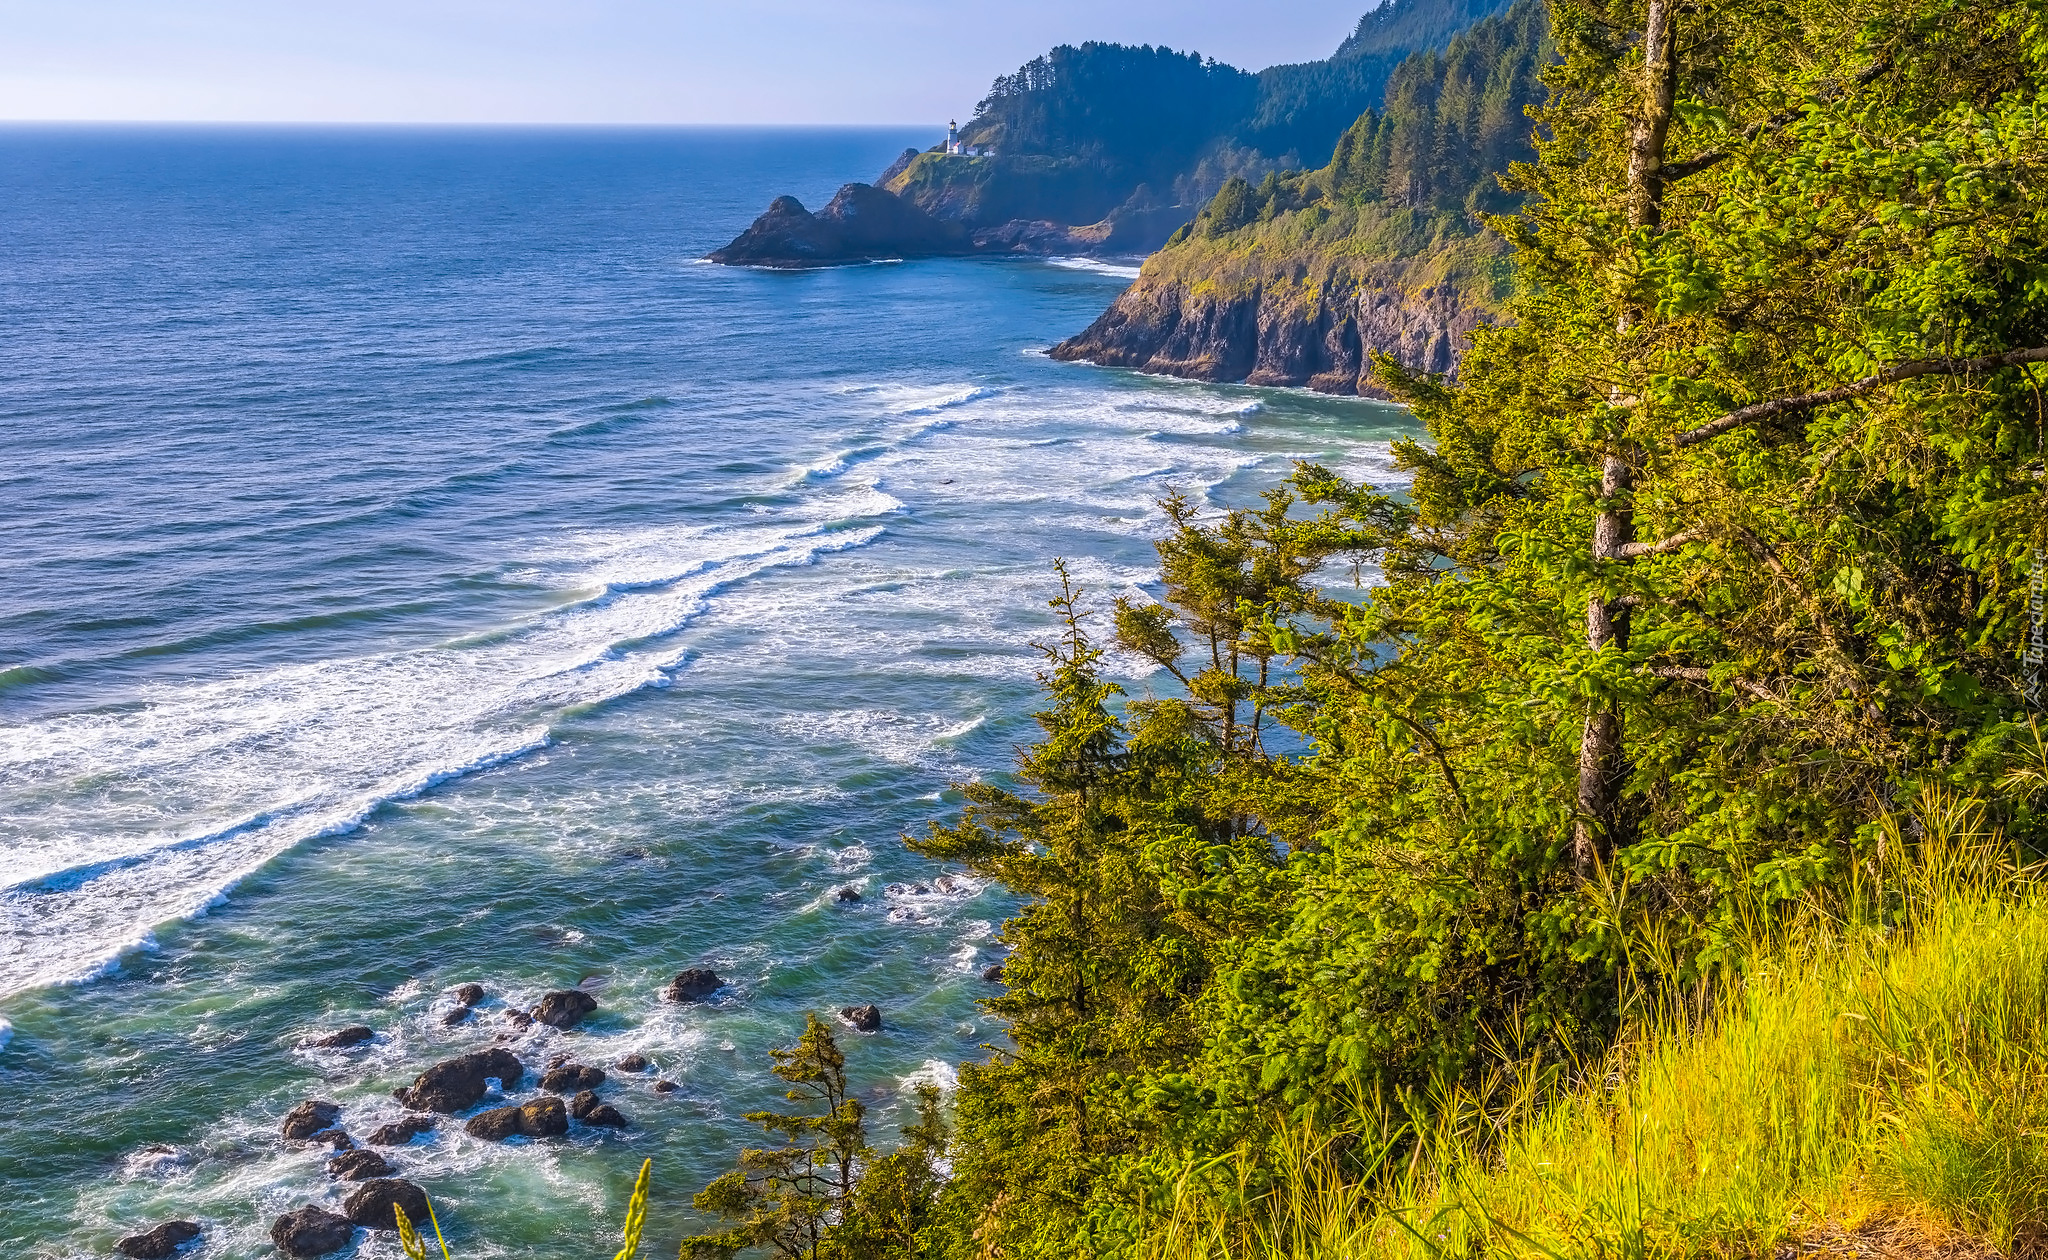 Wybrzeże, Morze, Skały, Drzewa, Trawa, Latarnia morska, Heceta Head Lighthouse, Oregon, Stany Zjednoczone